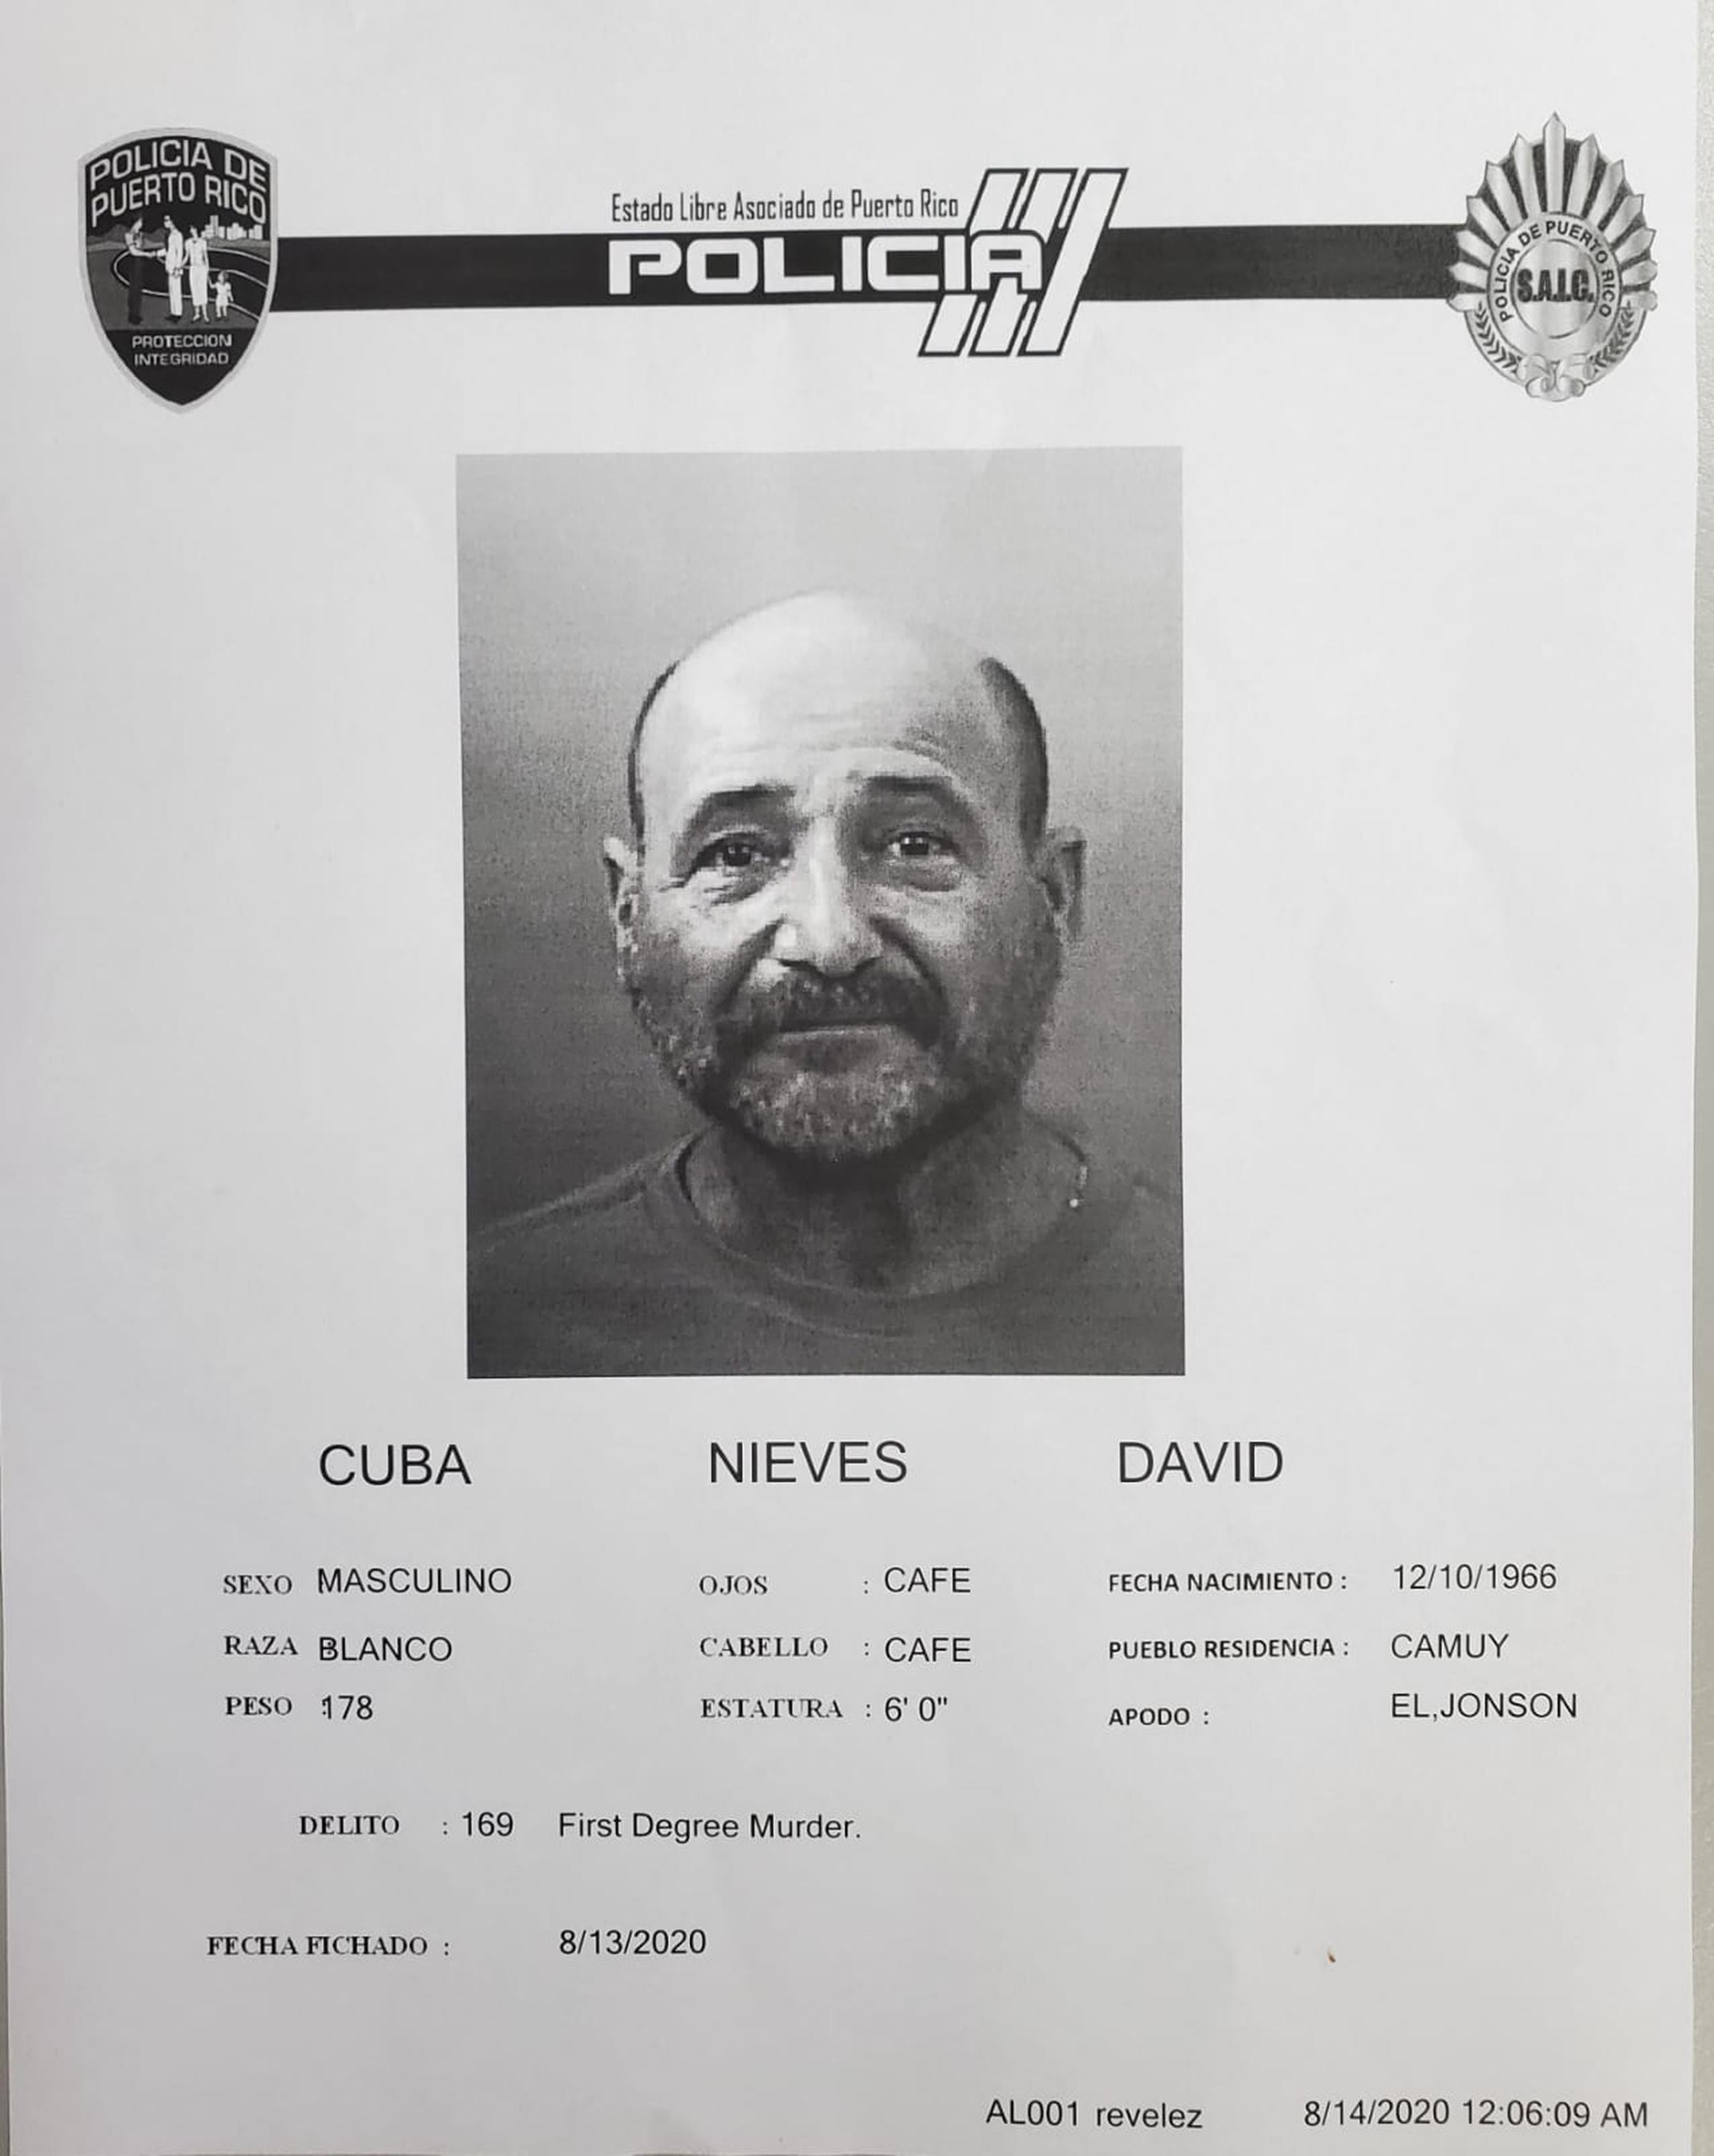 Se determinó causa para arresto contra David Cuba Nieves por cargos de asesinato en primer grado y violación a la Ley de Armas, señalándole una fianza de $110,000, la cual no prestó.